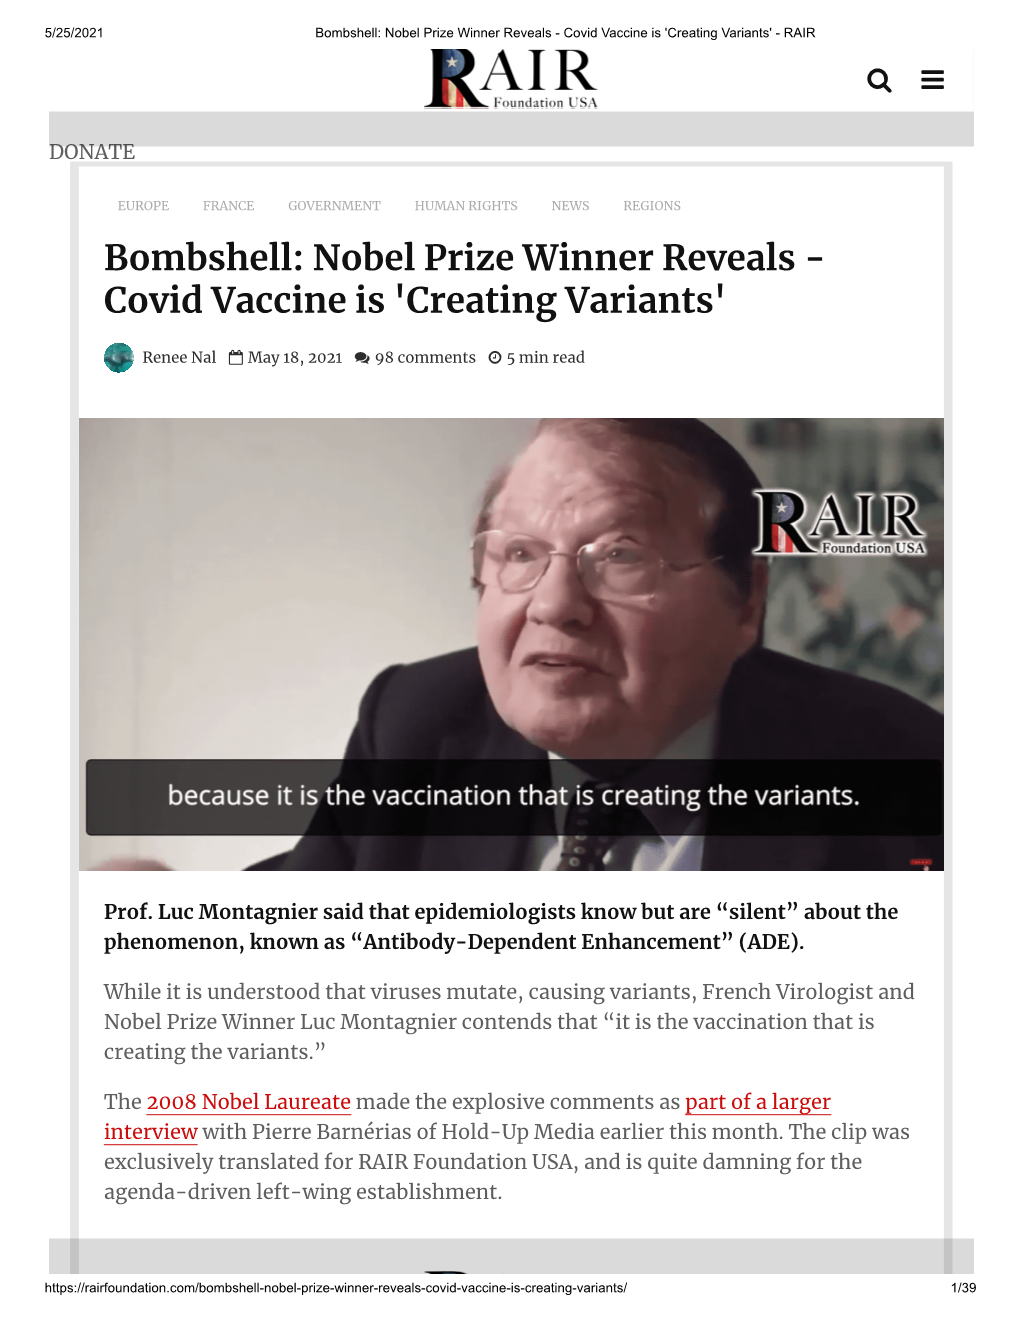 Nobel Prize Winner Reveals - Covid Vaccine Is 'Creating Variants' - RAIR